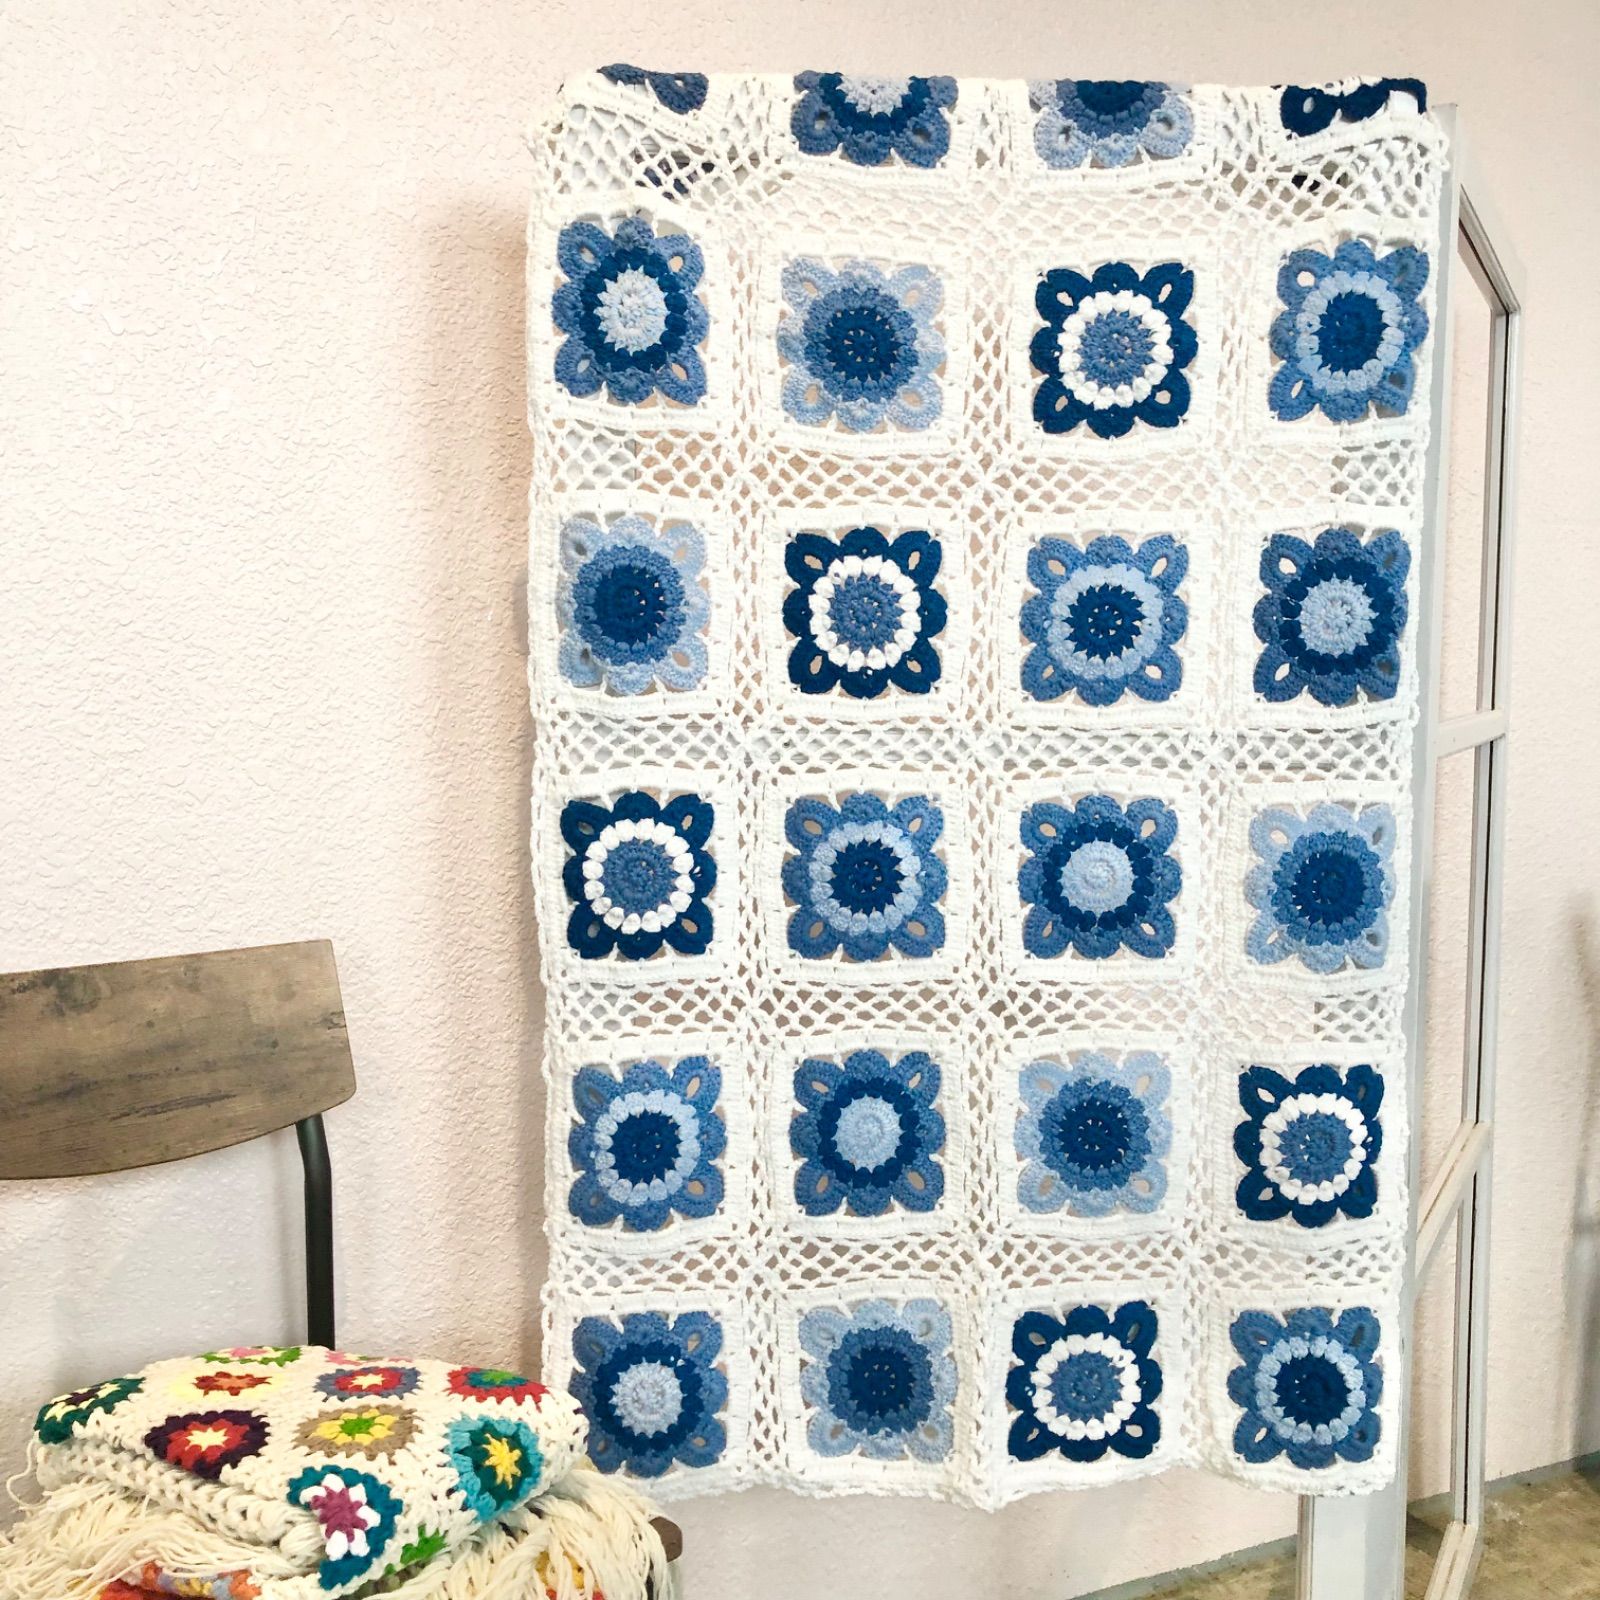 ホワイト 青 花柄 モチーフ編みマルチカバーブランケットハンドメイド